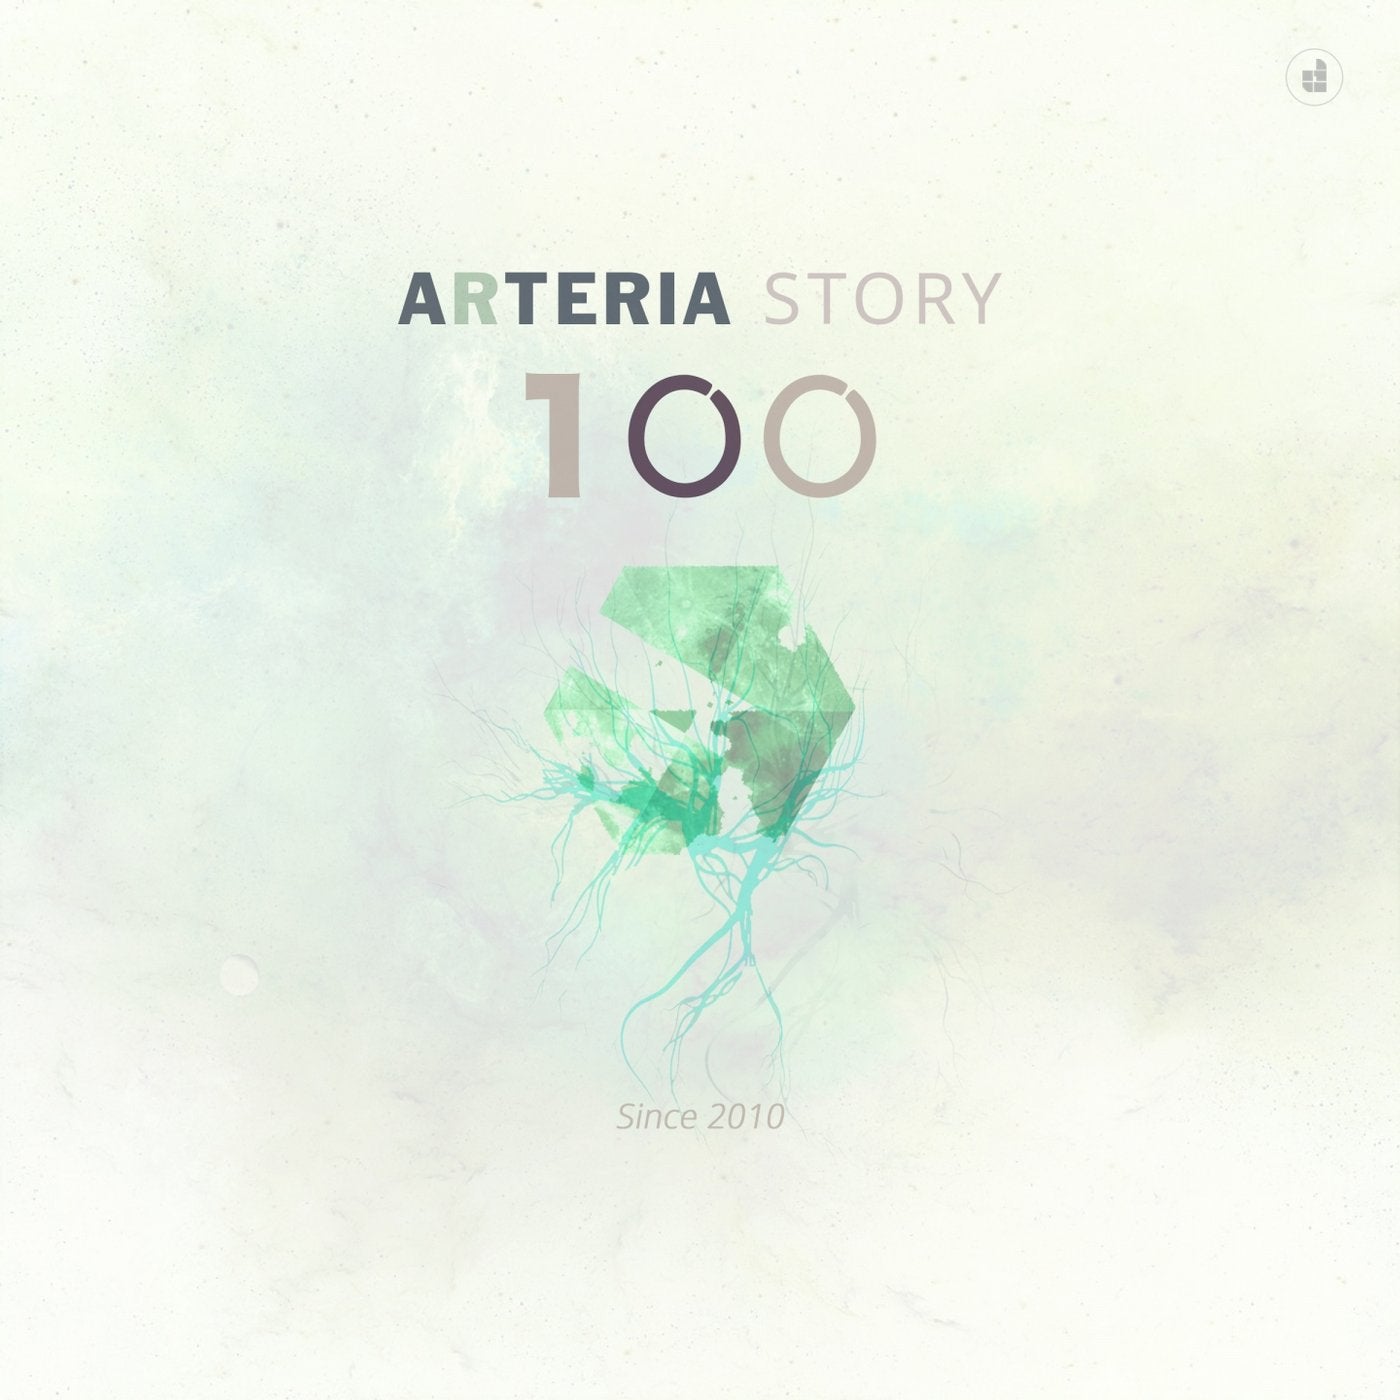 Arteria Story 100